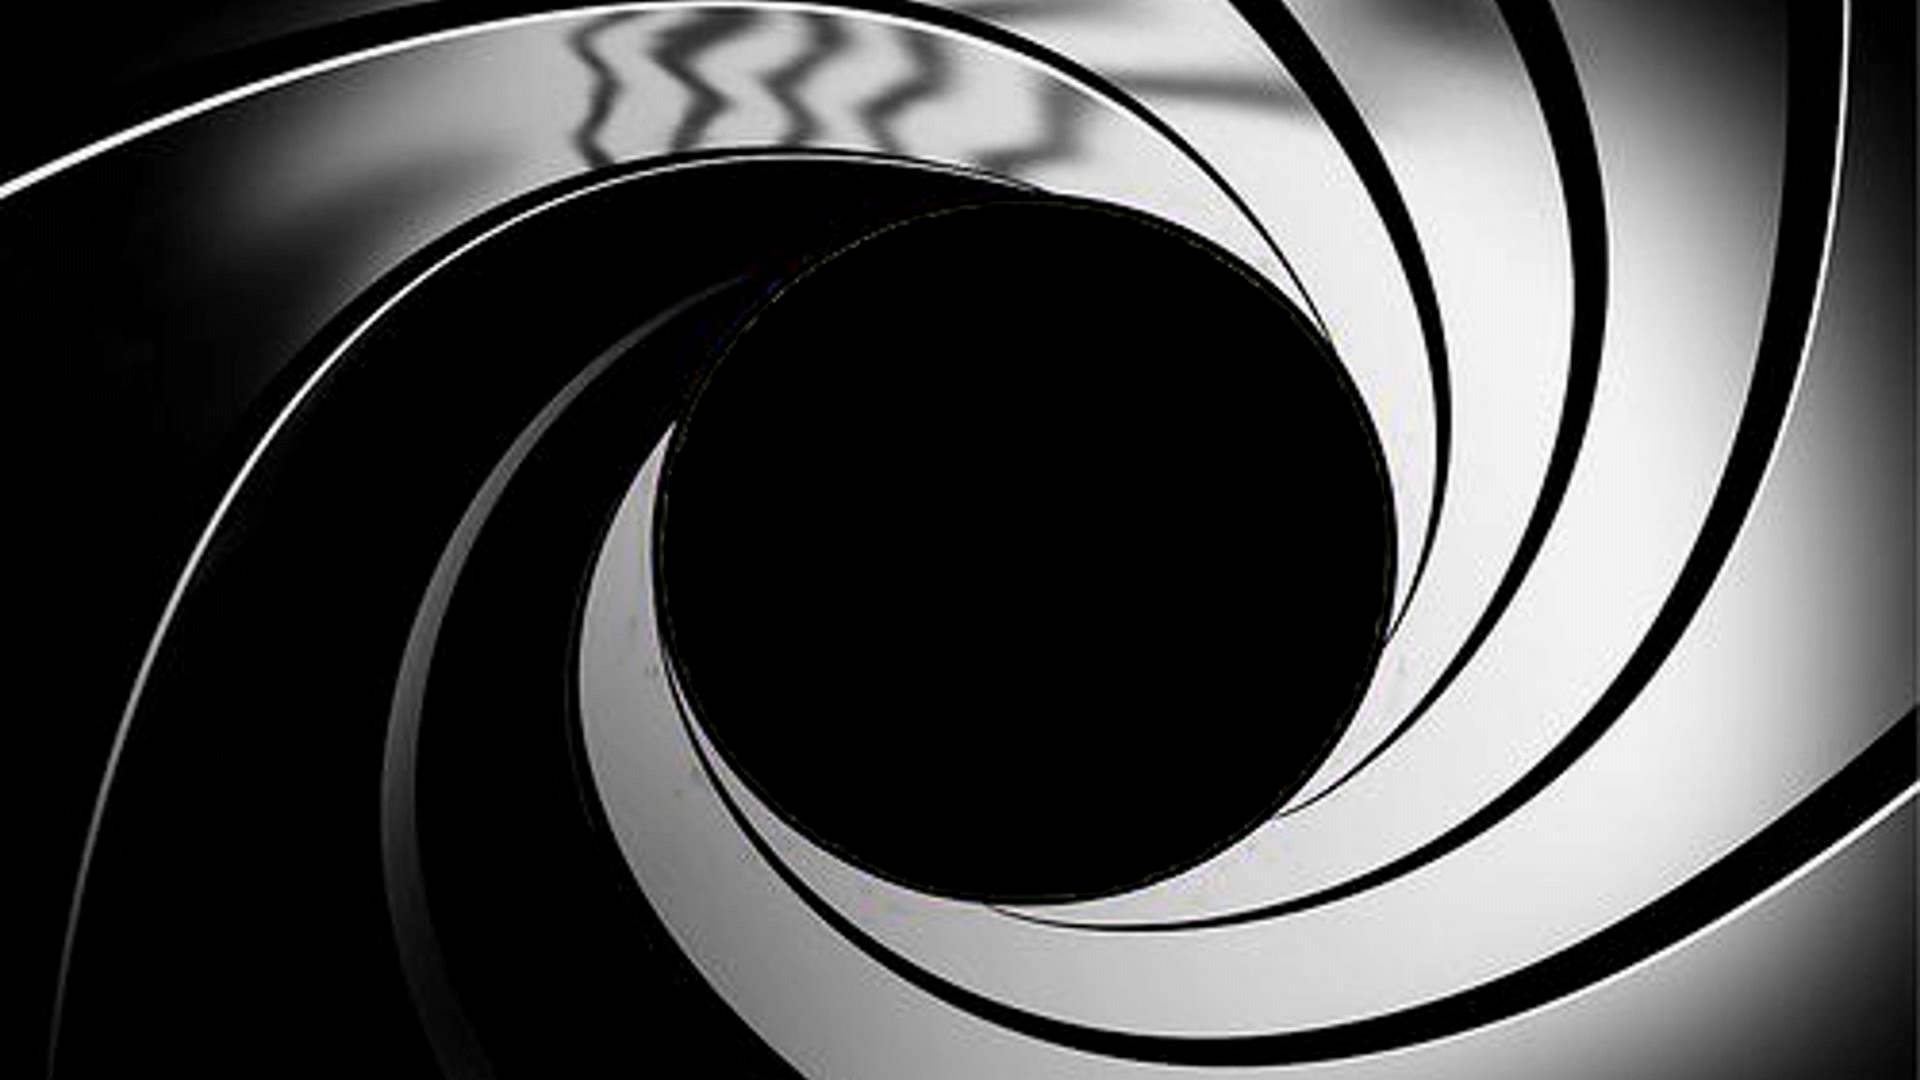 James Bond Gun Barrel Gif James Bond Gun Barrel Circulo Descubre Y | My ...